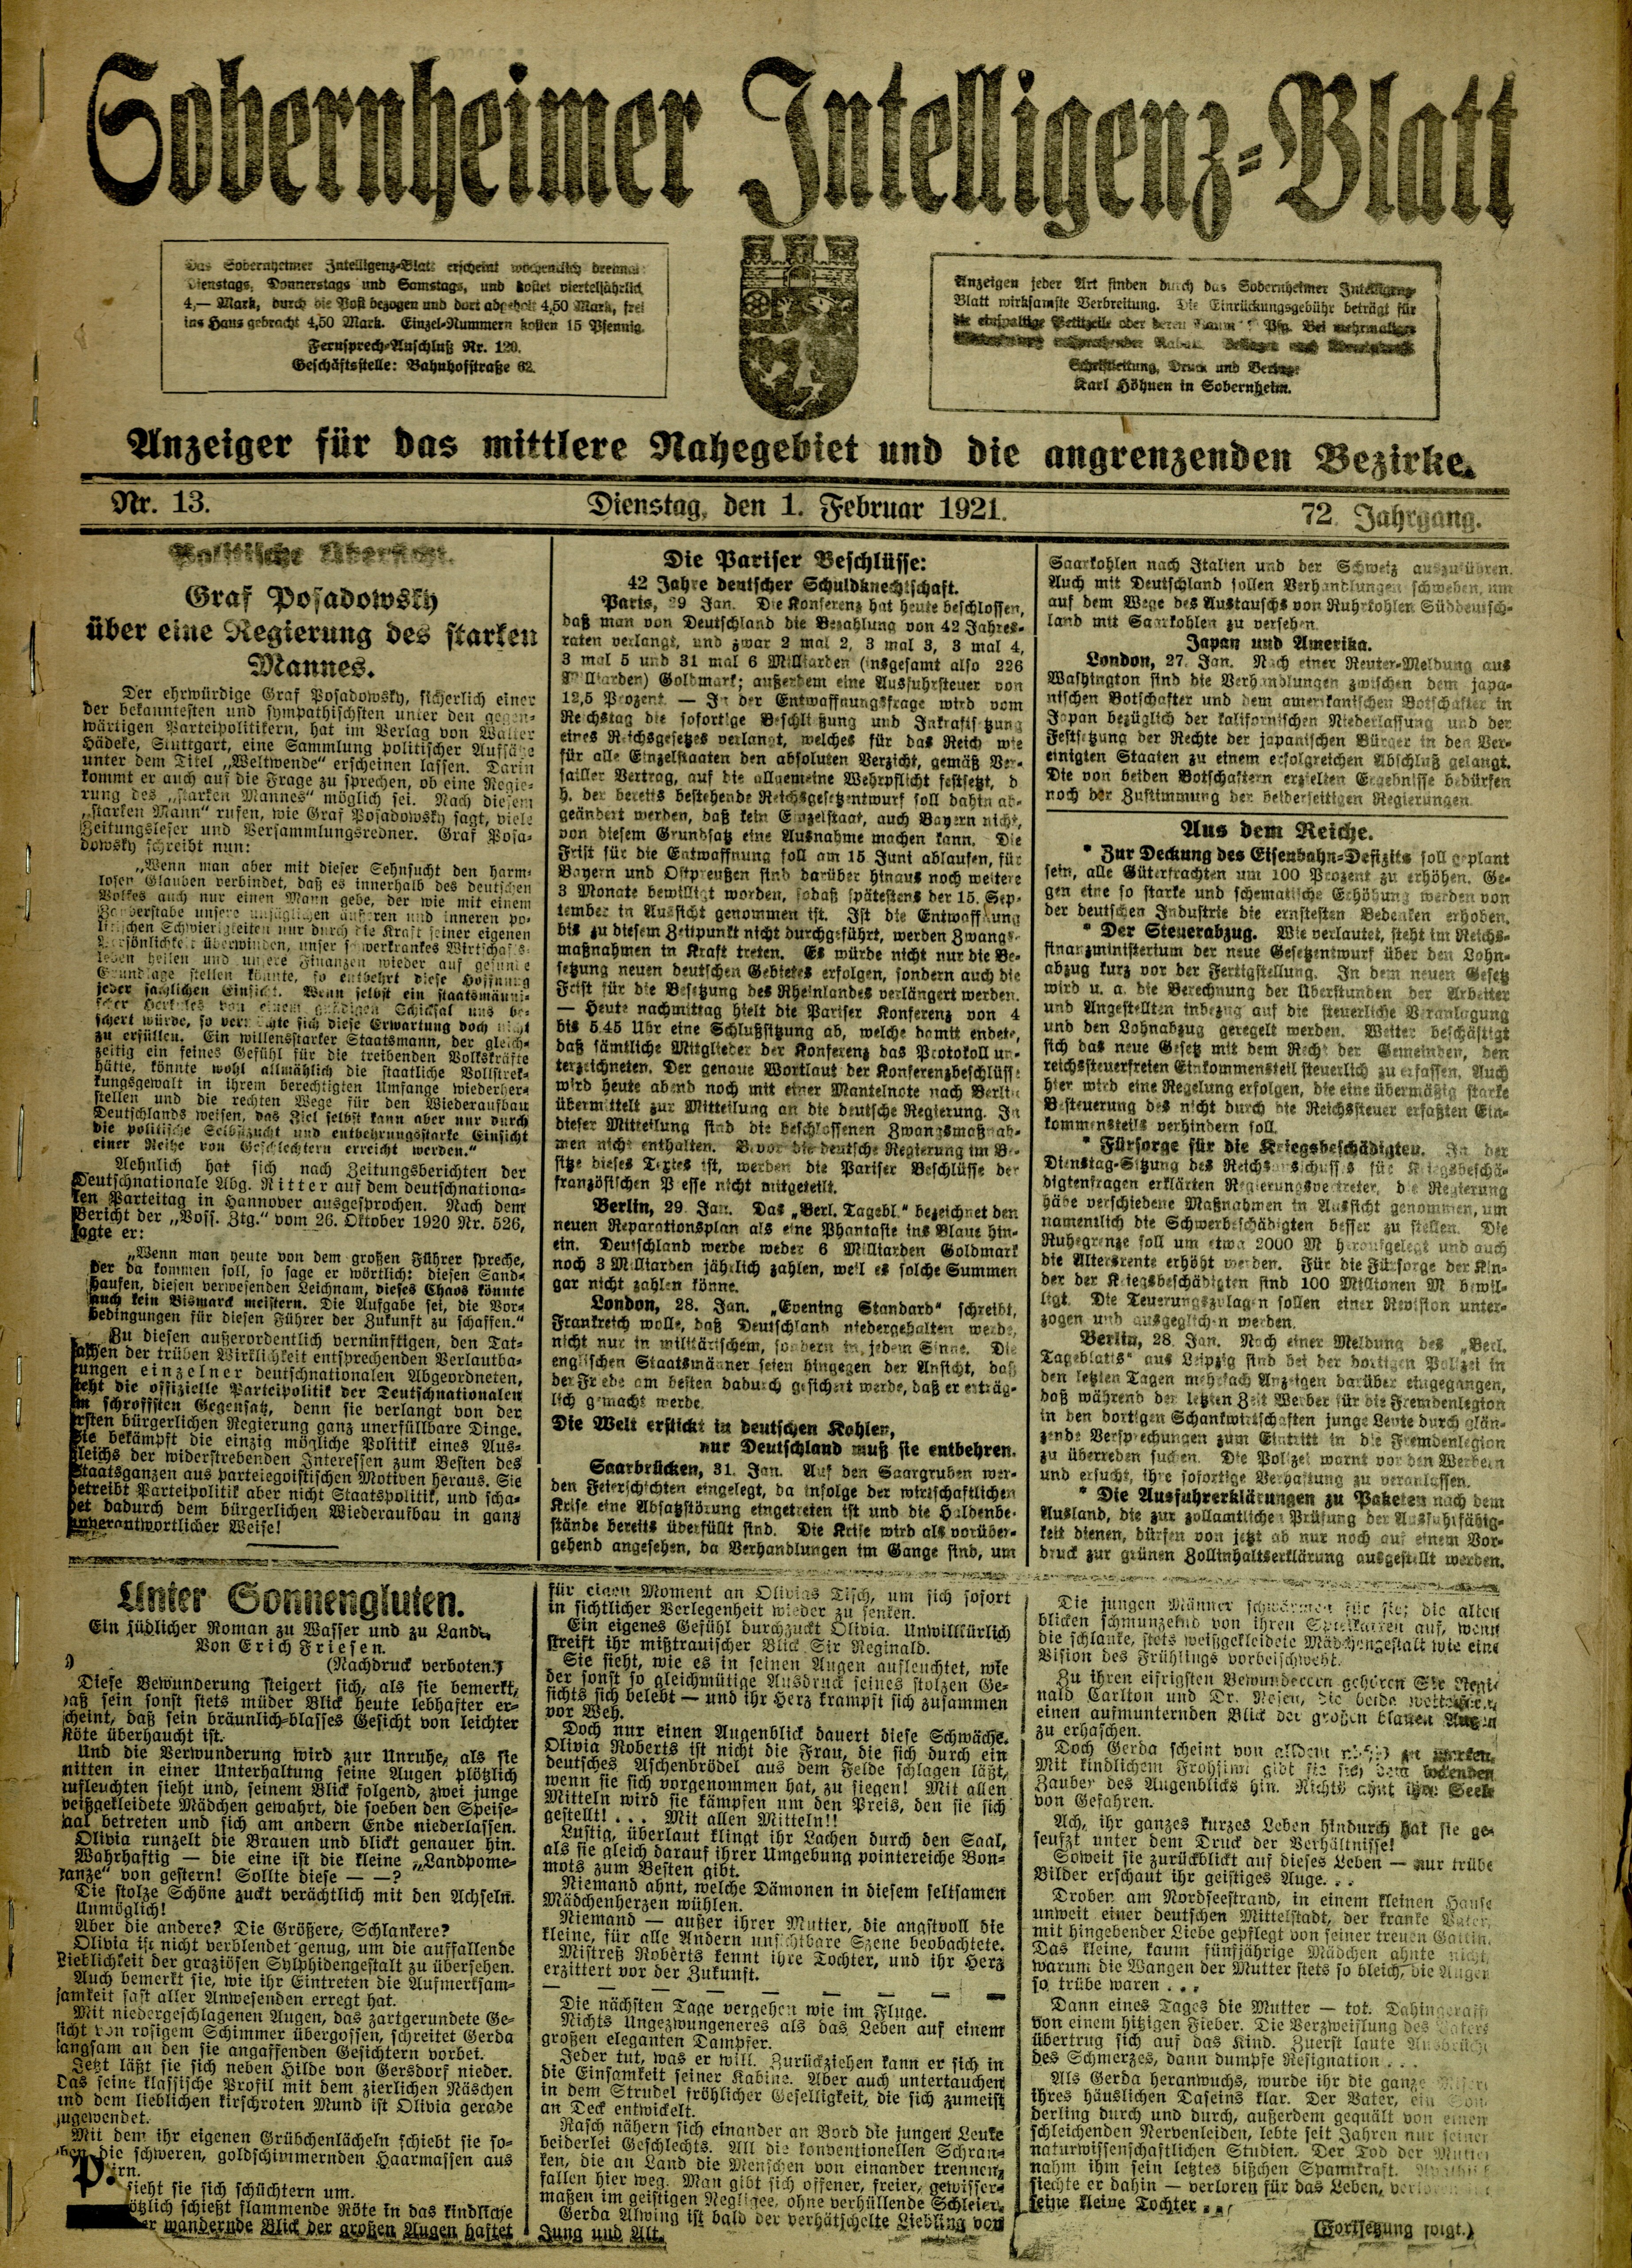 Zeitung: Sobernheimer Intelligenzblatt; August 1921, Jg. 72 Nr. 13 (Heimatmuseum Bad Sobernheim CC BY-NC-SA)